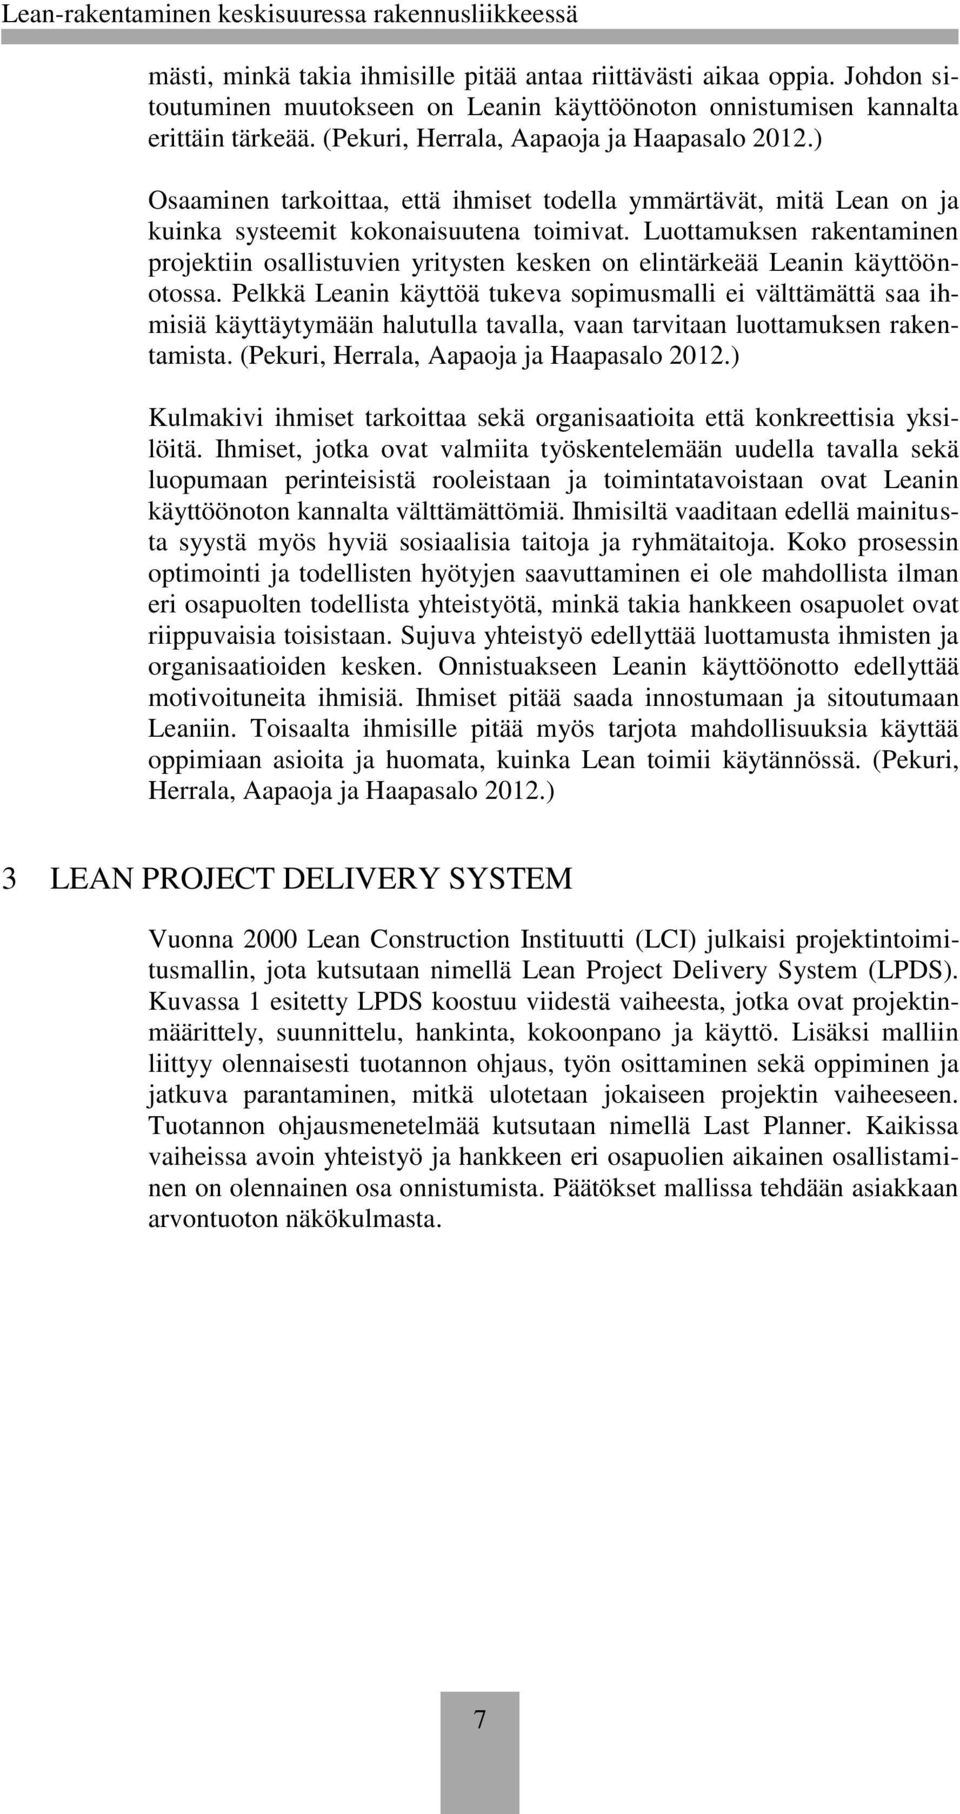 Luottamuksen rakentaminen projektiin osallistuvien yritysten kesken on elintärkeää Leanin käyttöönotossa.